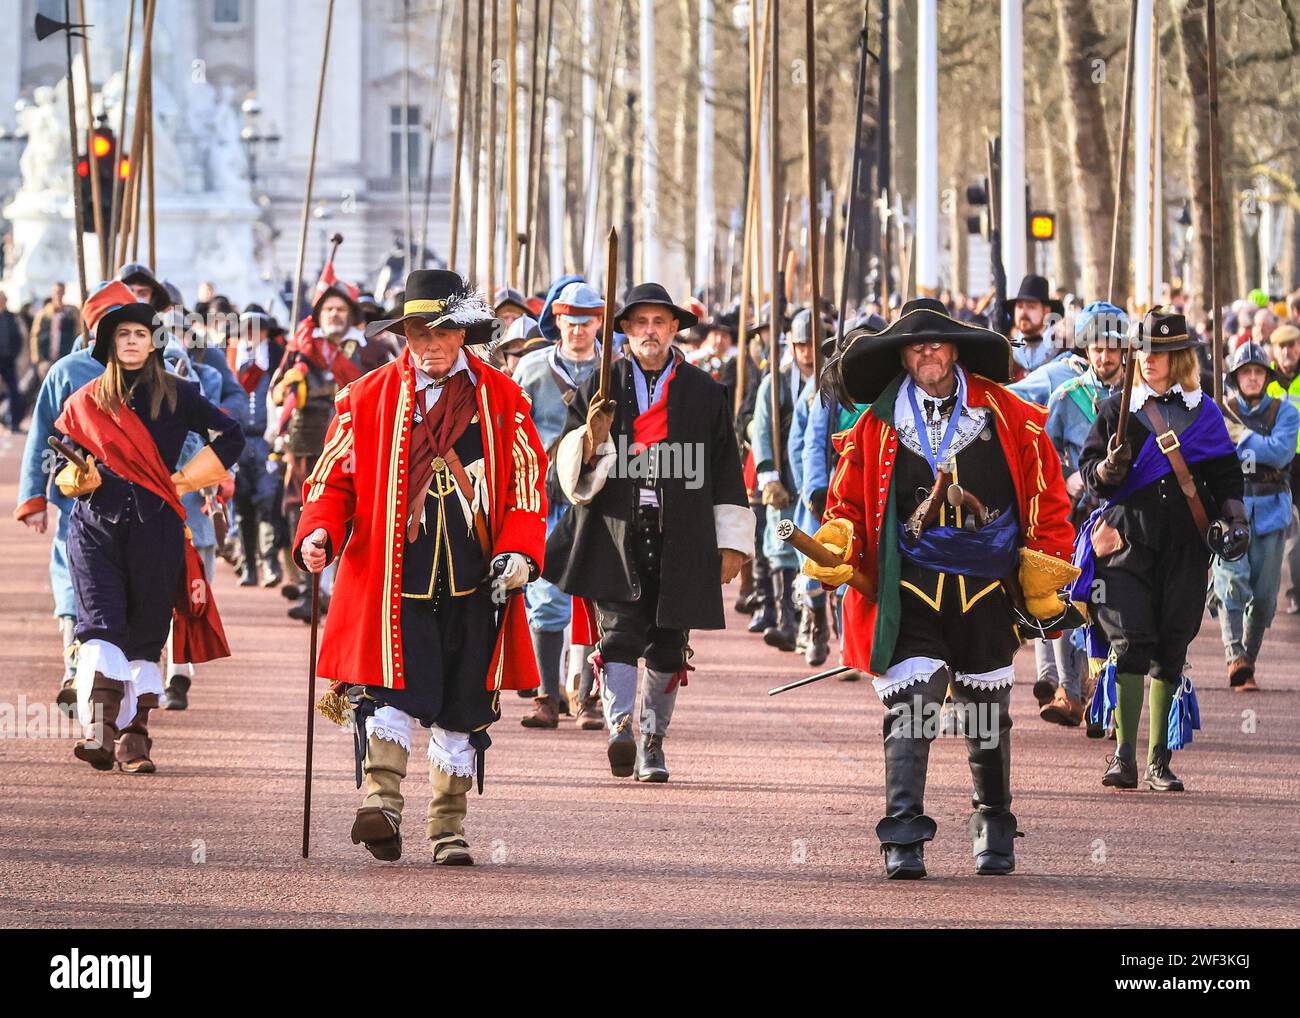 Londres, Royaume-Uni 28 janvier 2024. Le Lord General de l'armée du roi de la Société anglaise de la guerre civile mène la procession le long du Mall. Chaque année, les volontaires de la Société de la guerre civile anglaise avec l'Armée des rois marchent le long du Mall dans le centre de Londres et à Horse Guards Parade, en commémoration de Charles Ier, martyrisé le 30 janvier 1649. Chaque régiment de la reconstitution se compose d'officiers, de mousquets, suivis de la couleur, des batteurs, des piqueurs et des bagages (femmes et enfants). La procession est menée par le Seigneur général de l'Armée des rois, et les cavaliers. Banque D'Images